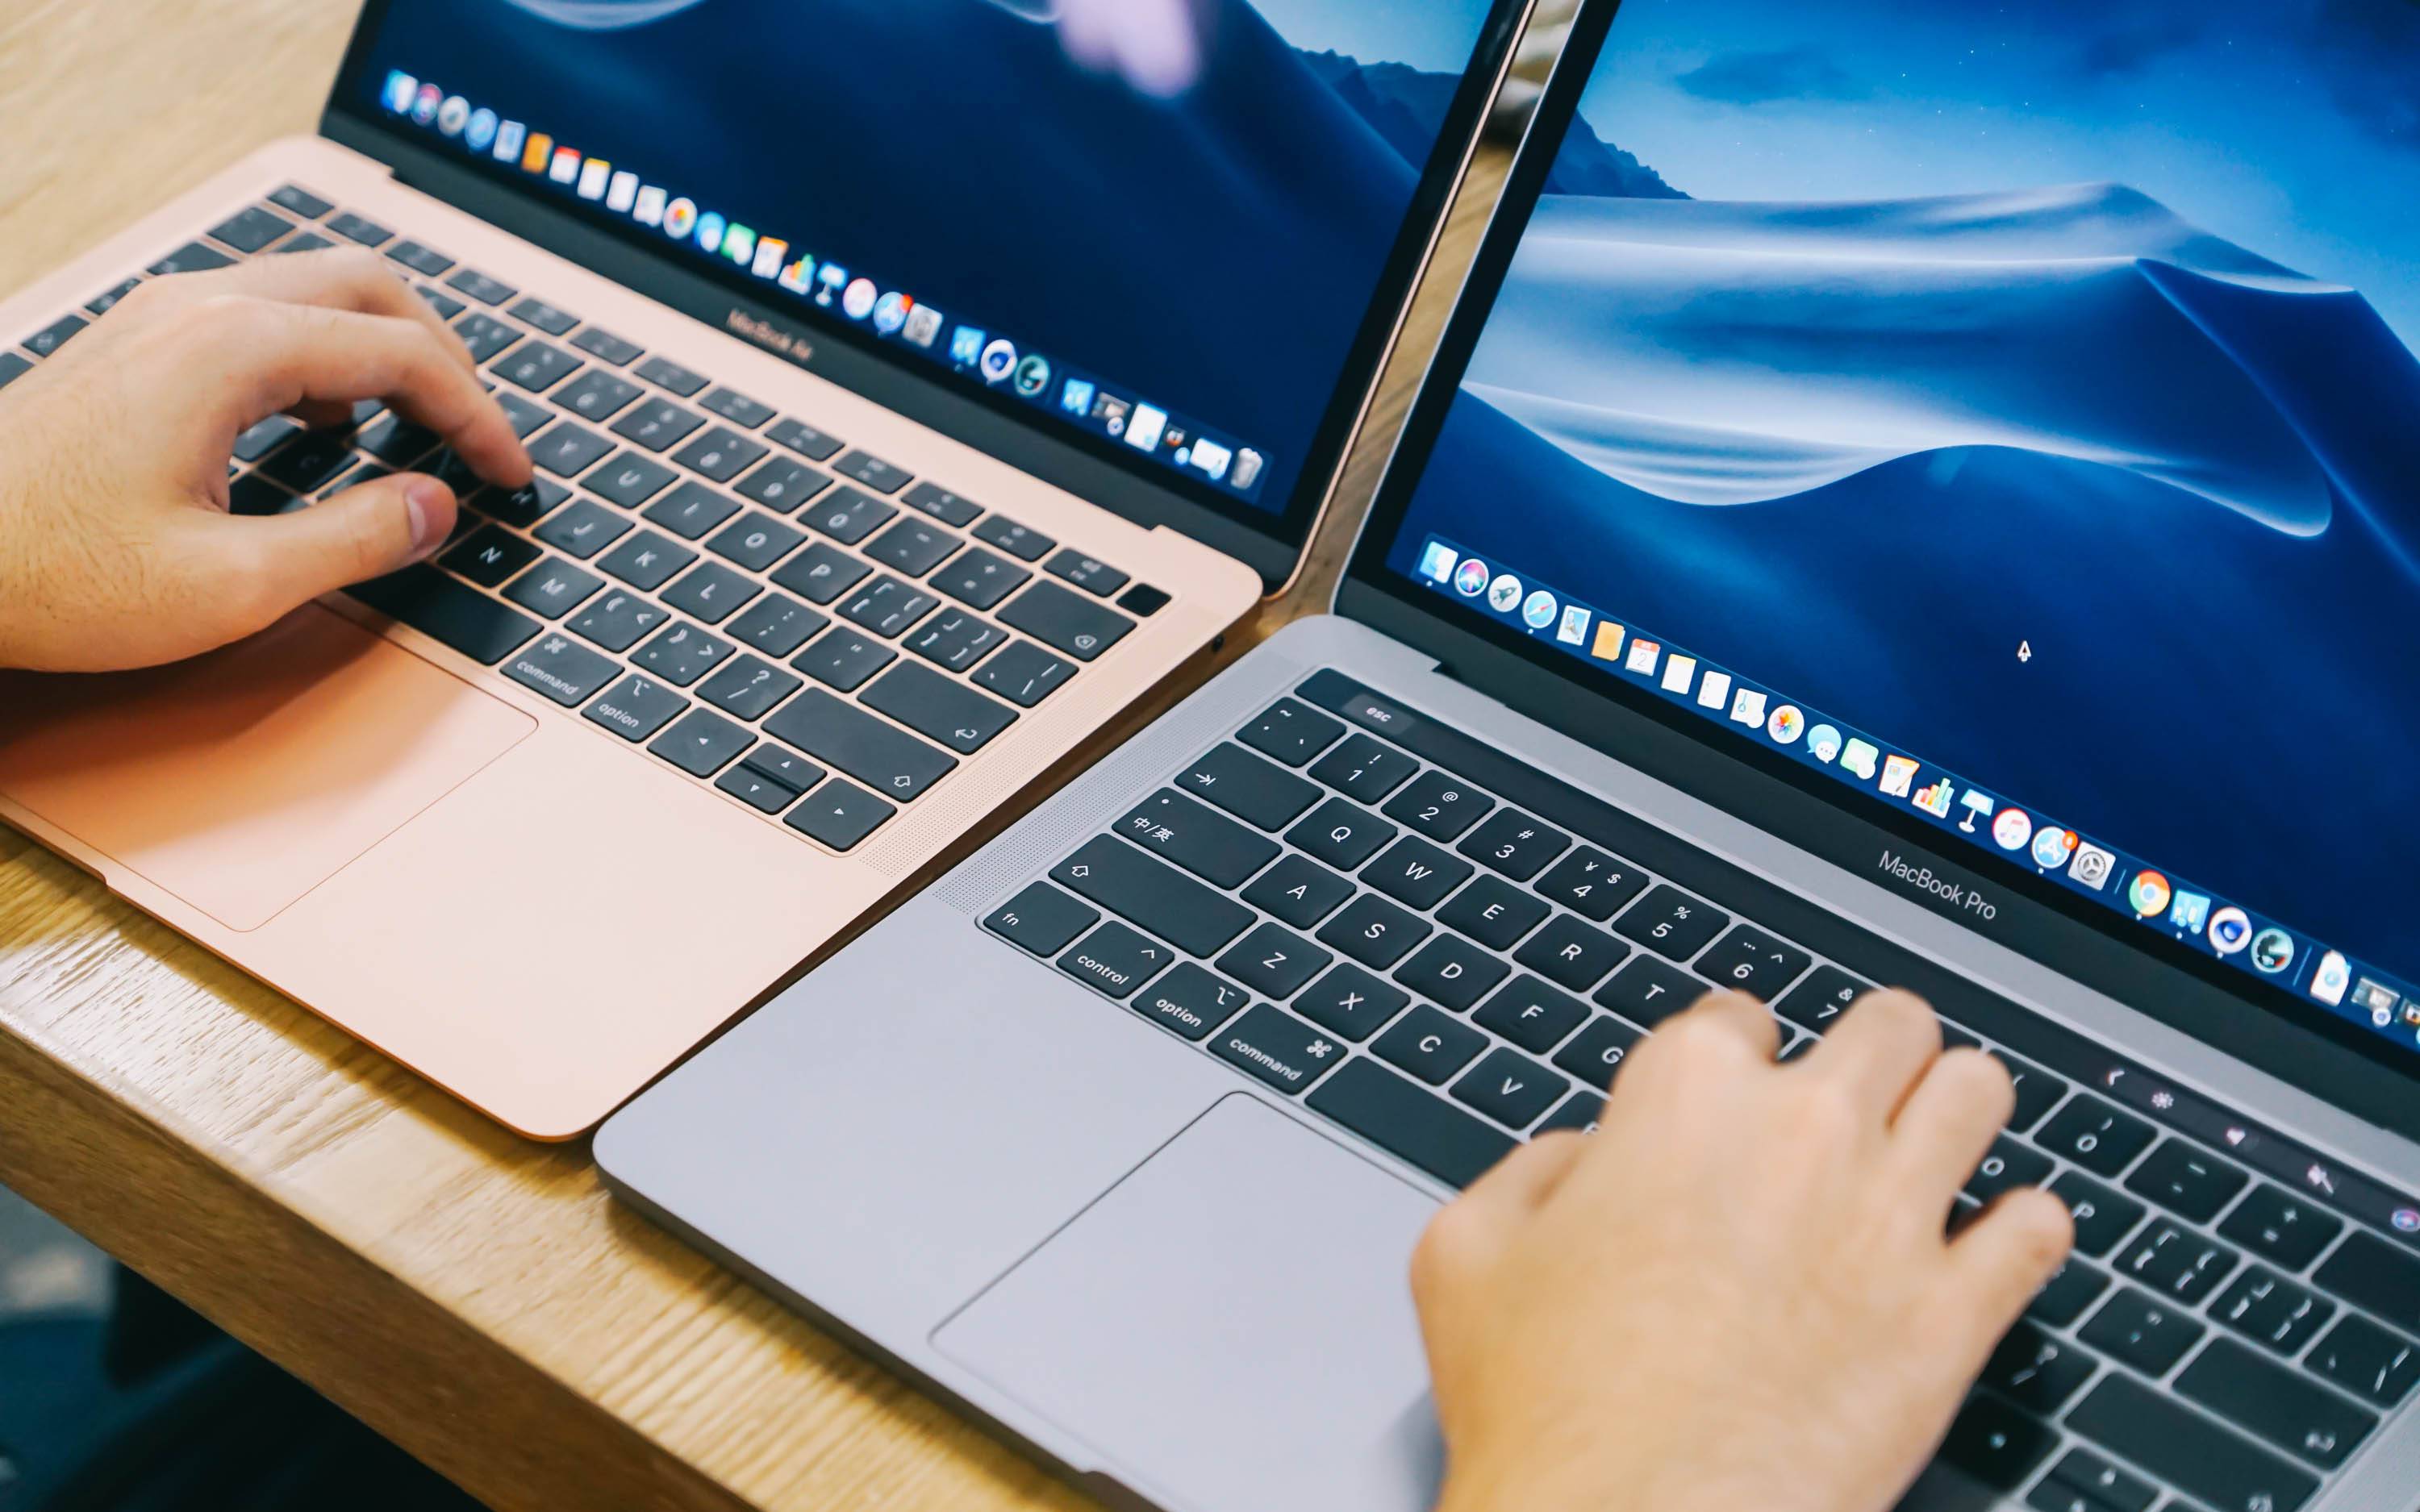 MacBook AirandPro - Apple entra nella “epoca retrò”?